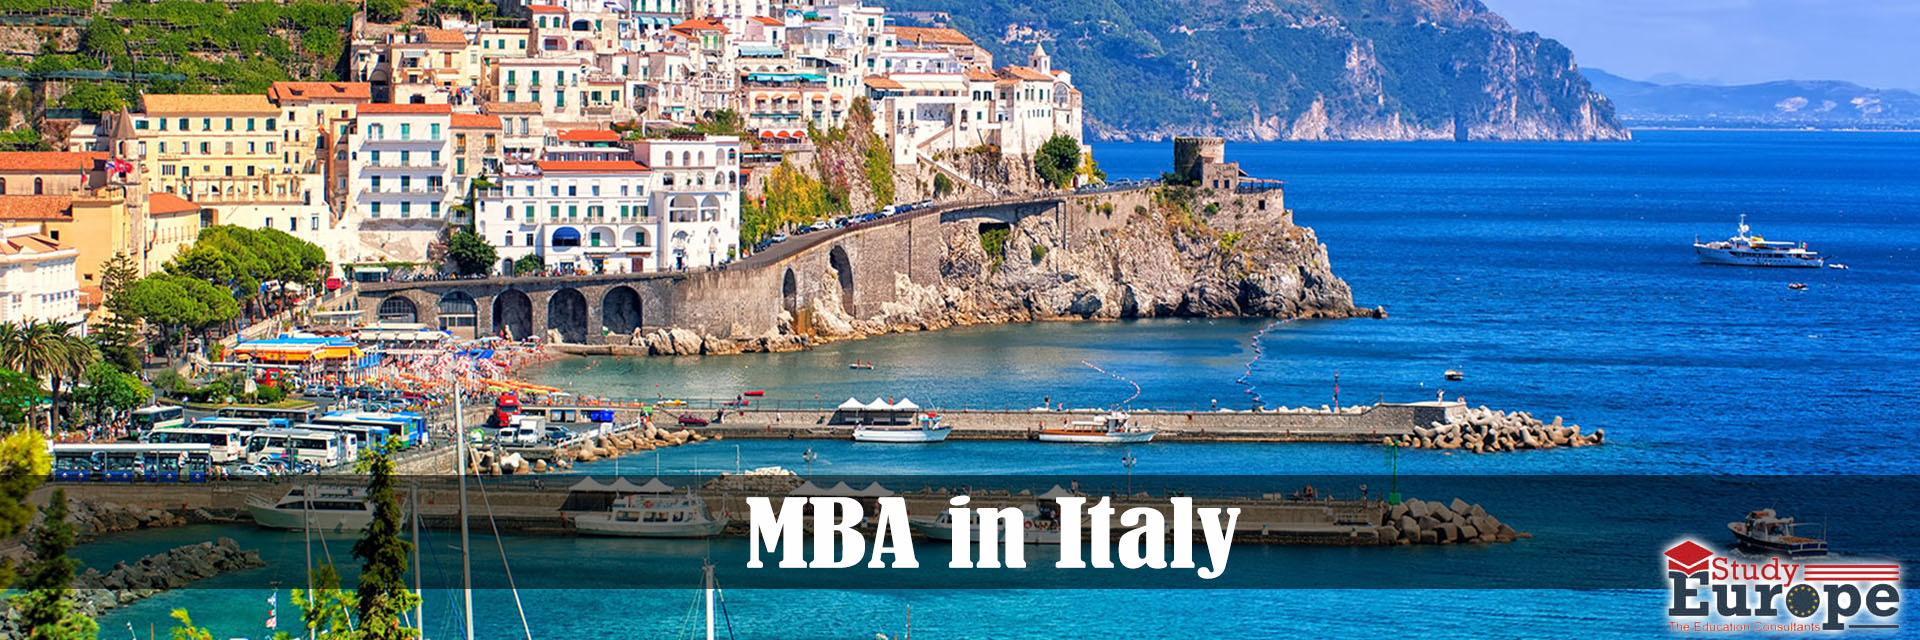 شرایط تحصیل MBA در ایتالیا.jpg